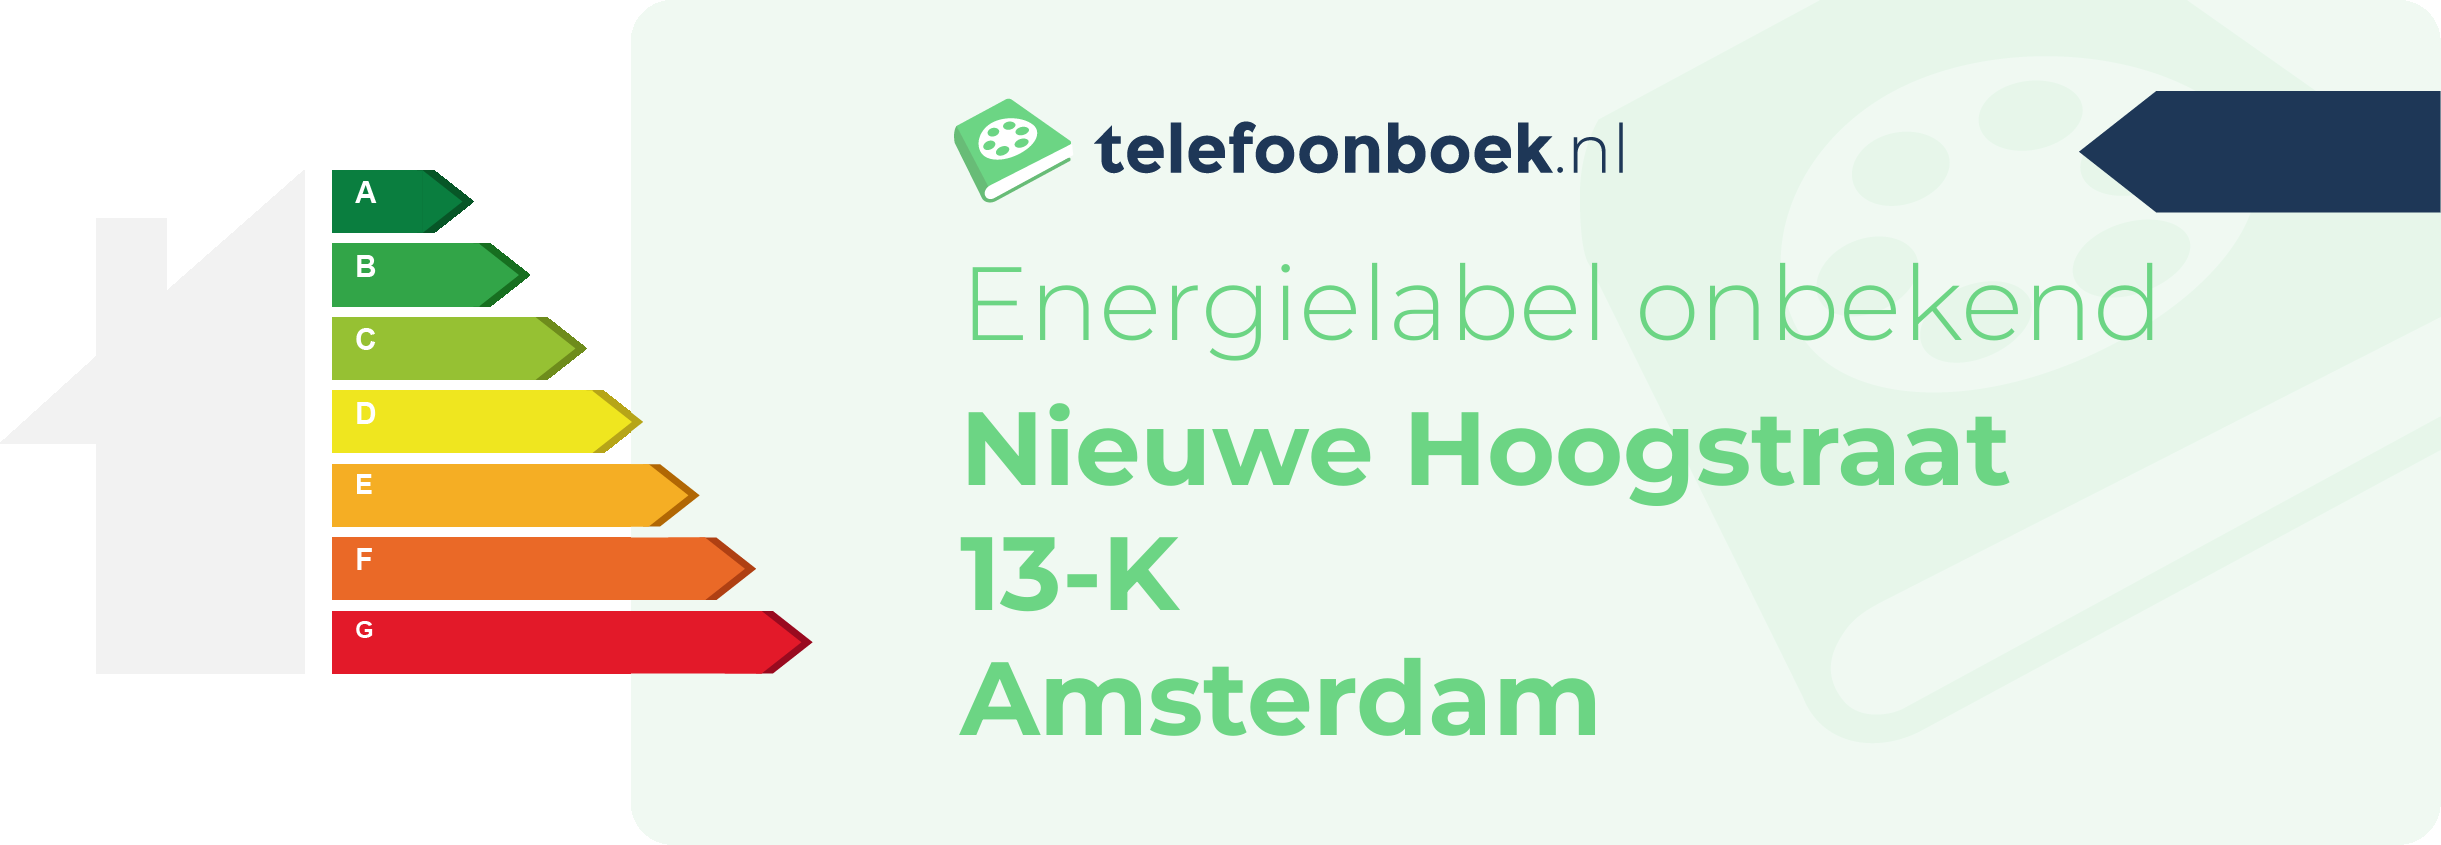 Energielabel Nieuwe Hoogstraat 13-K Amsterdam